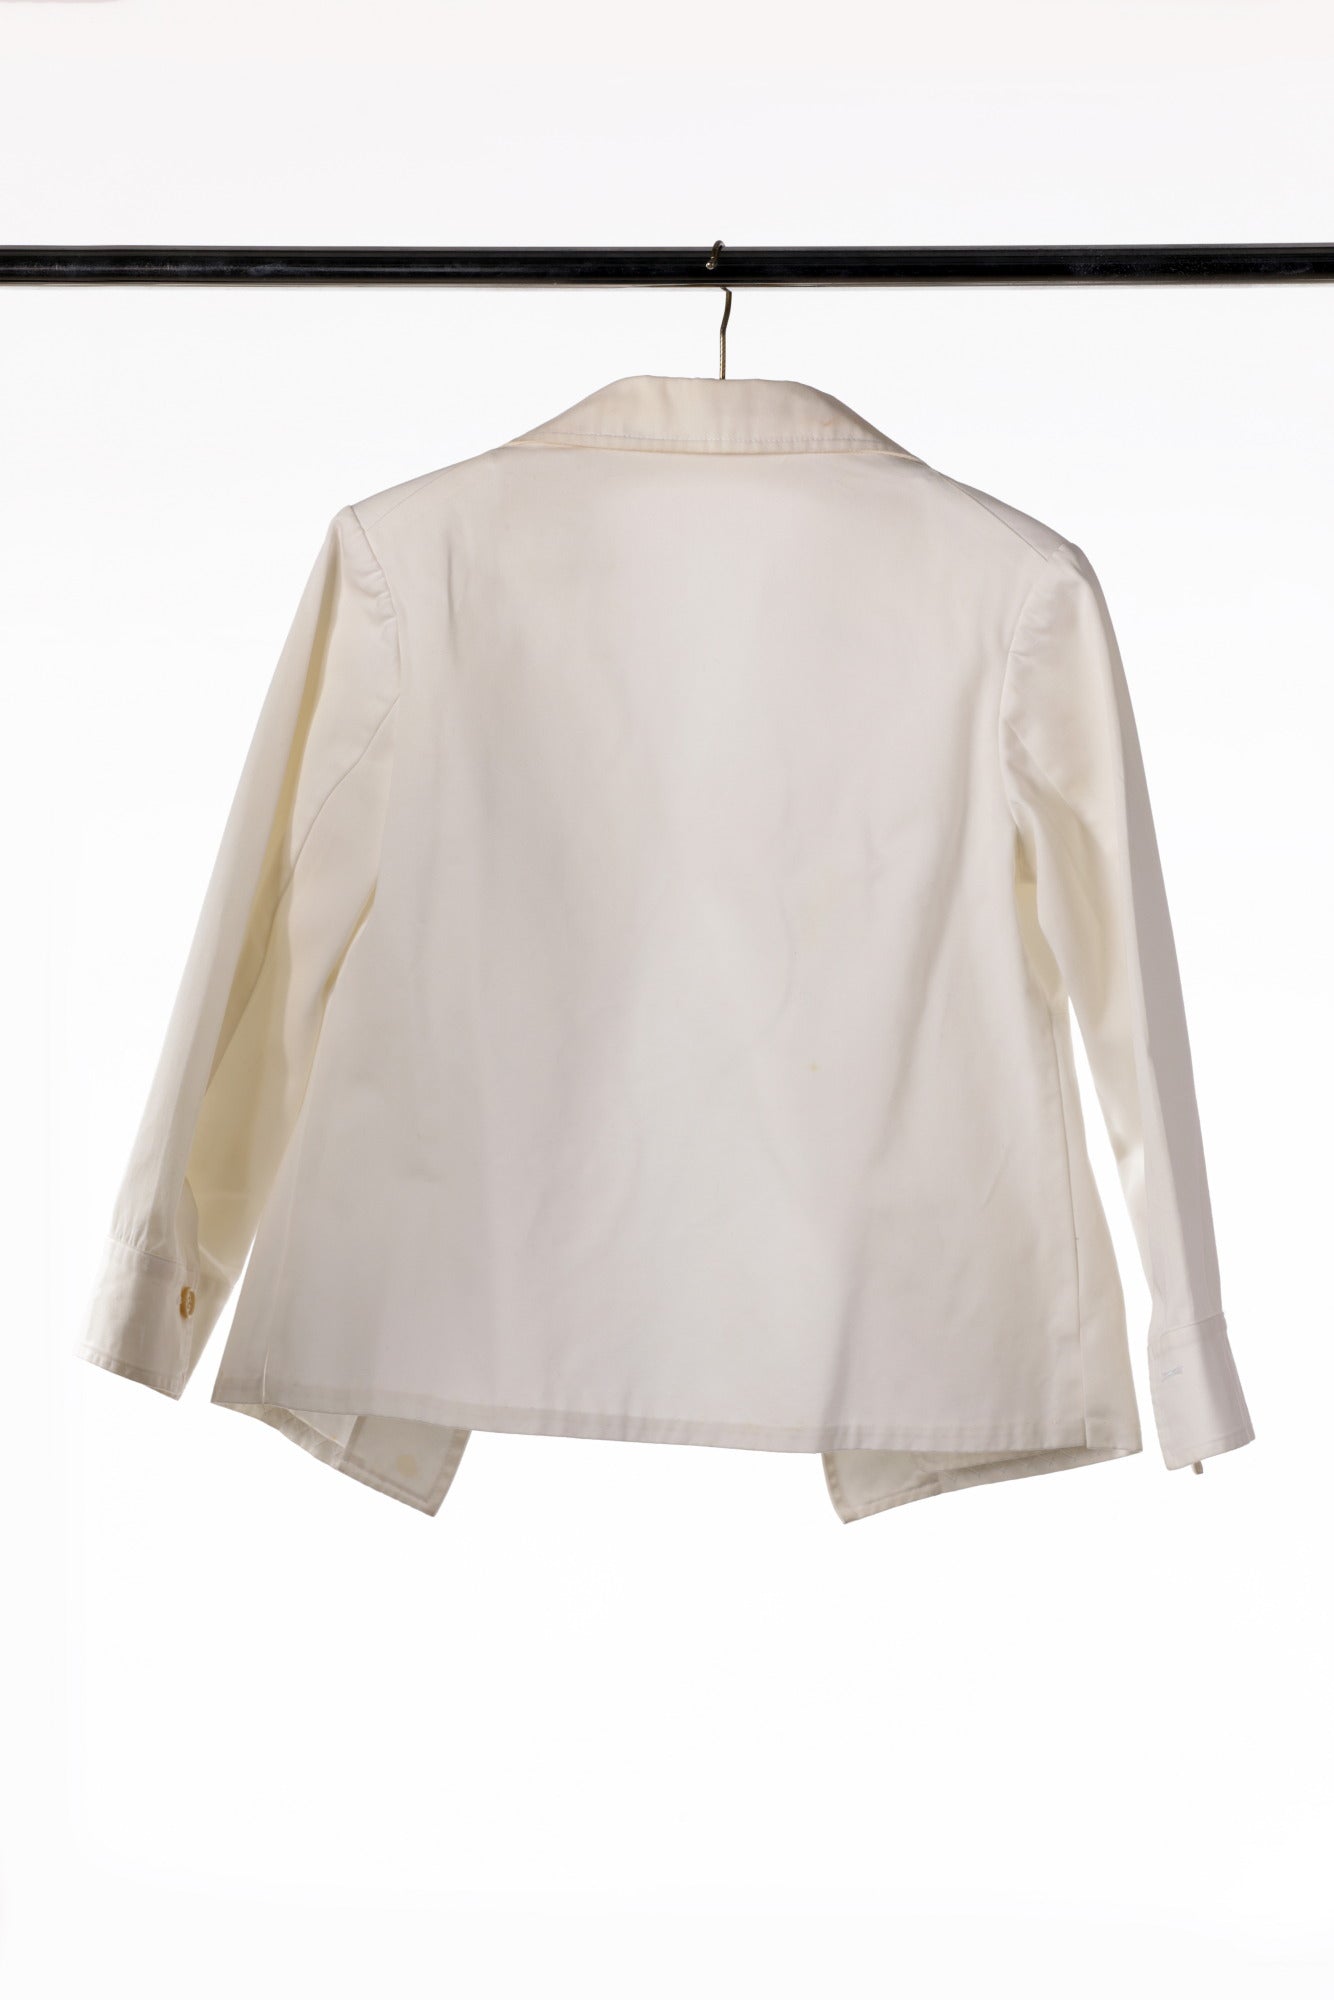 Yohji Yamamoto white cotton jacket